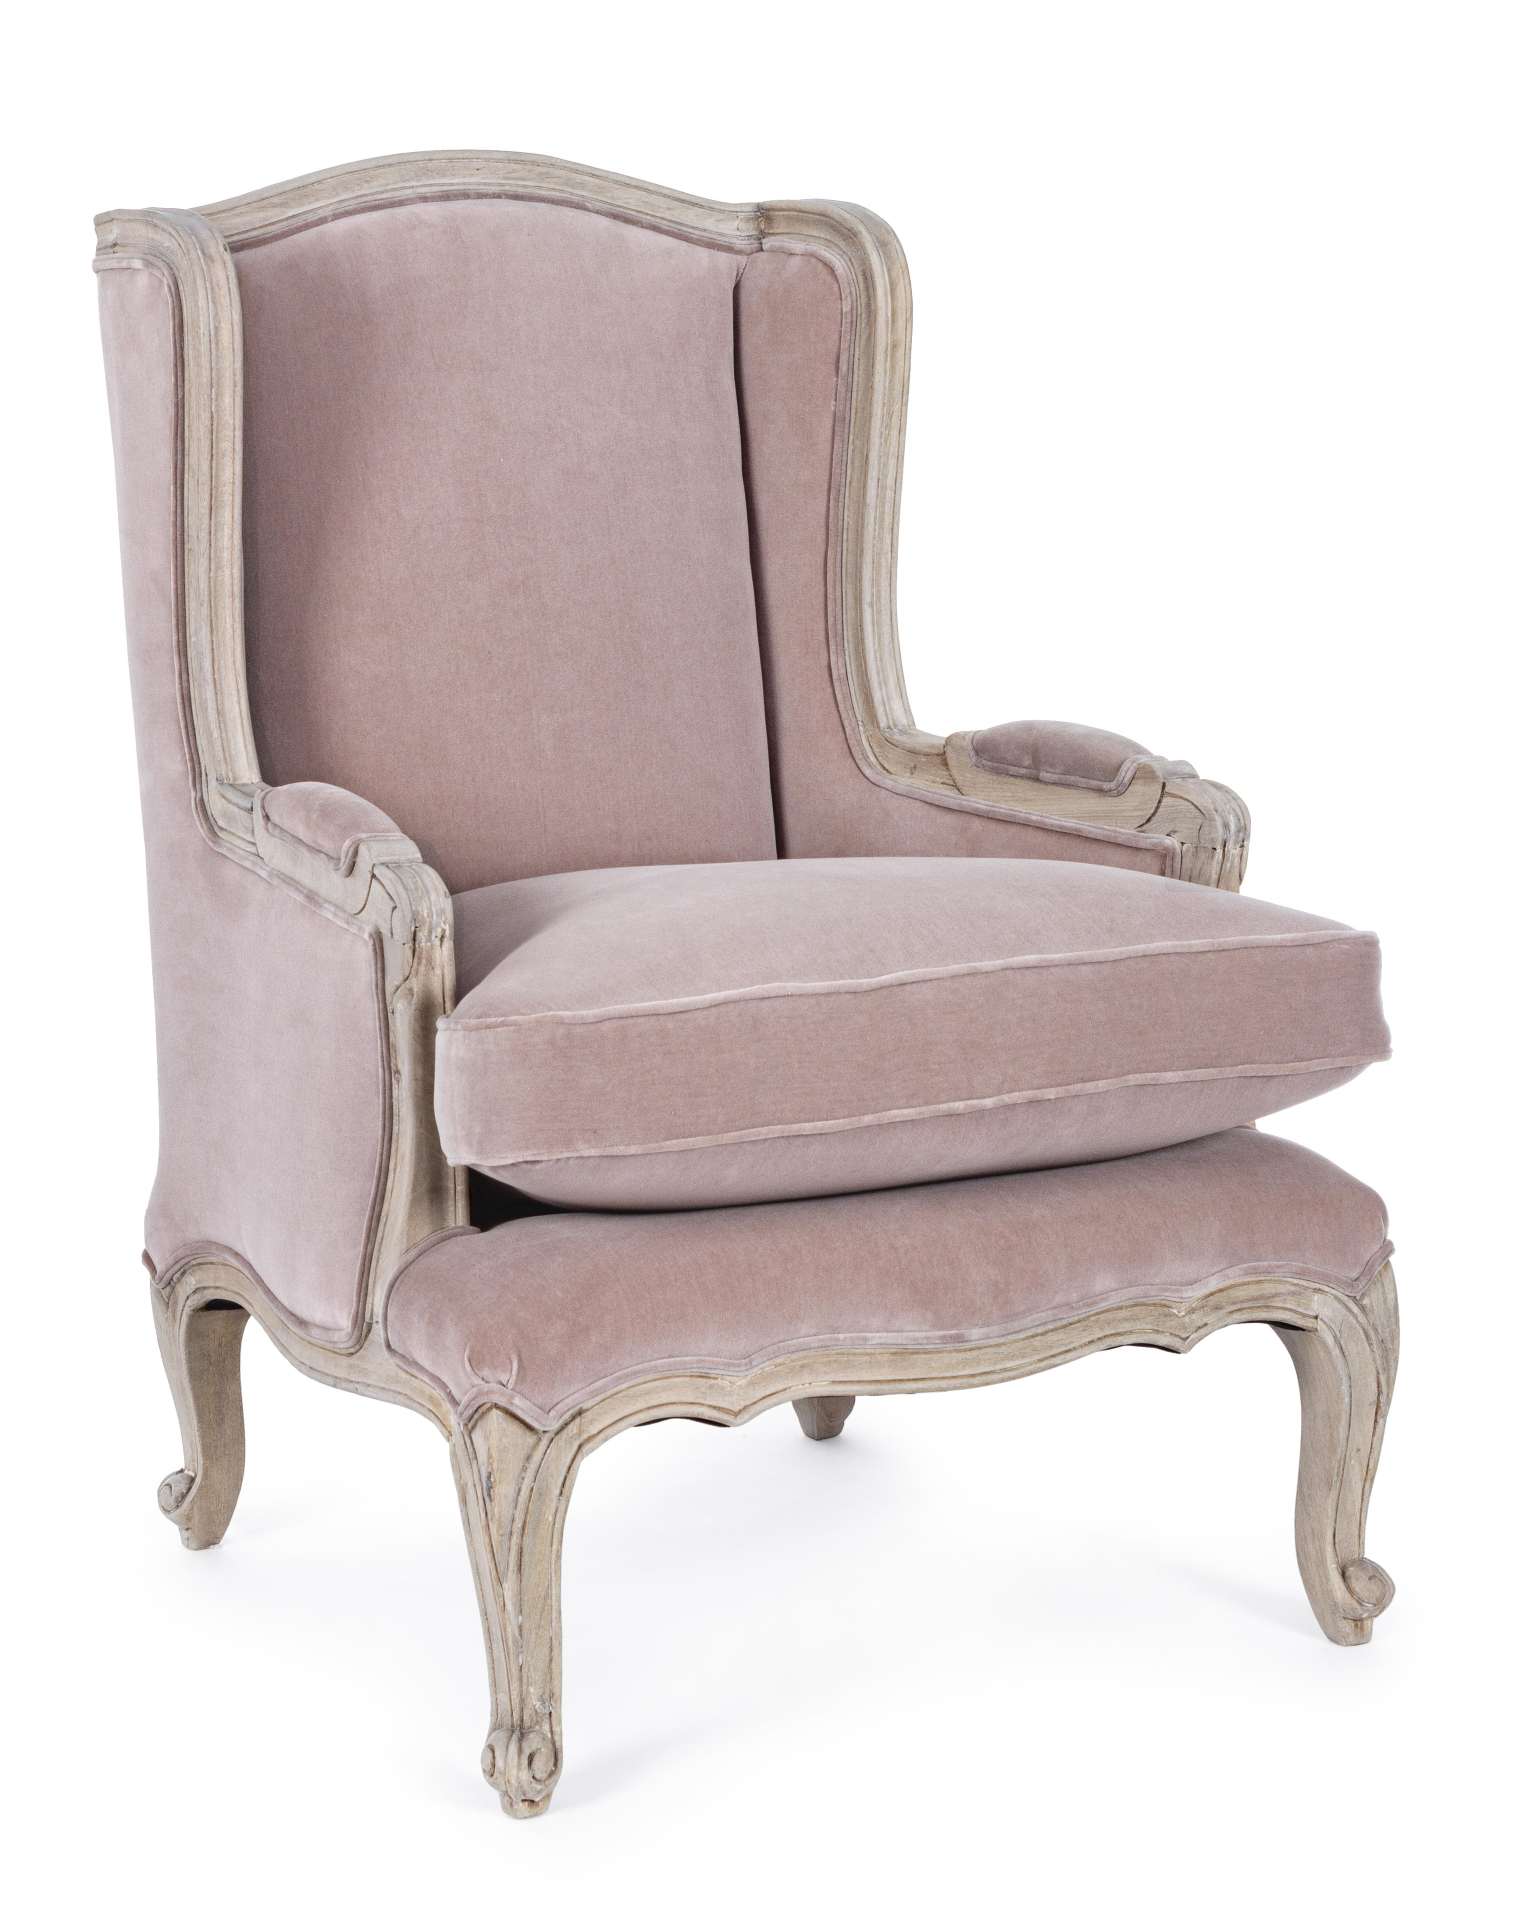 Der Sessel Lorelie überzeugt mit seinem klassischen Design. Gefertigt wurde er aus Stoff in Samt-Optik, welcher einen rosa Farbton besitzt. Das Gestell ist aus Mangoholz und hat eine natürliche Farbe. Der Sessel besitzt eine Sitzhöhe von 53 cm. Die Breite